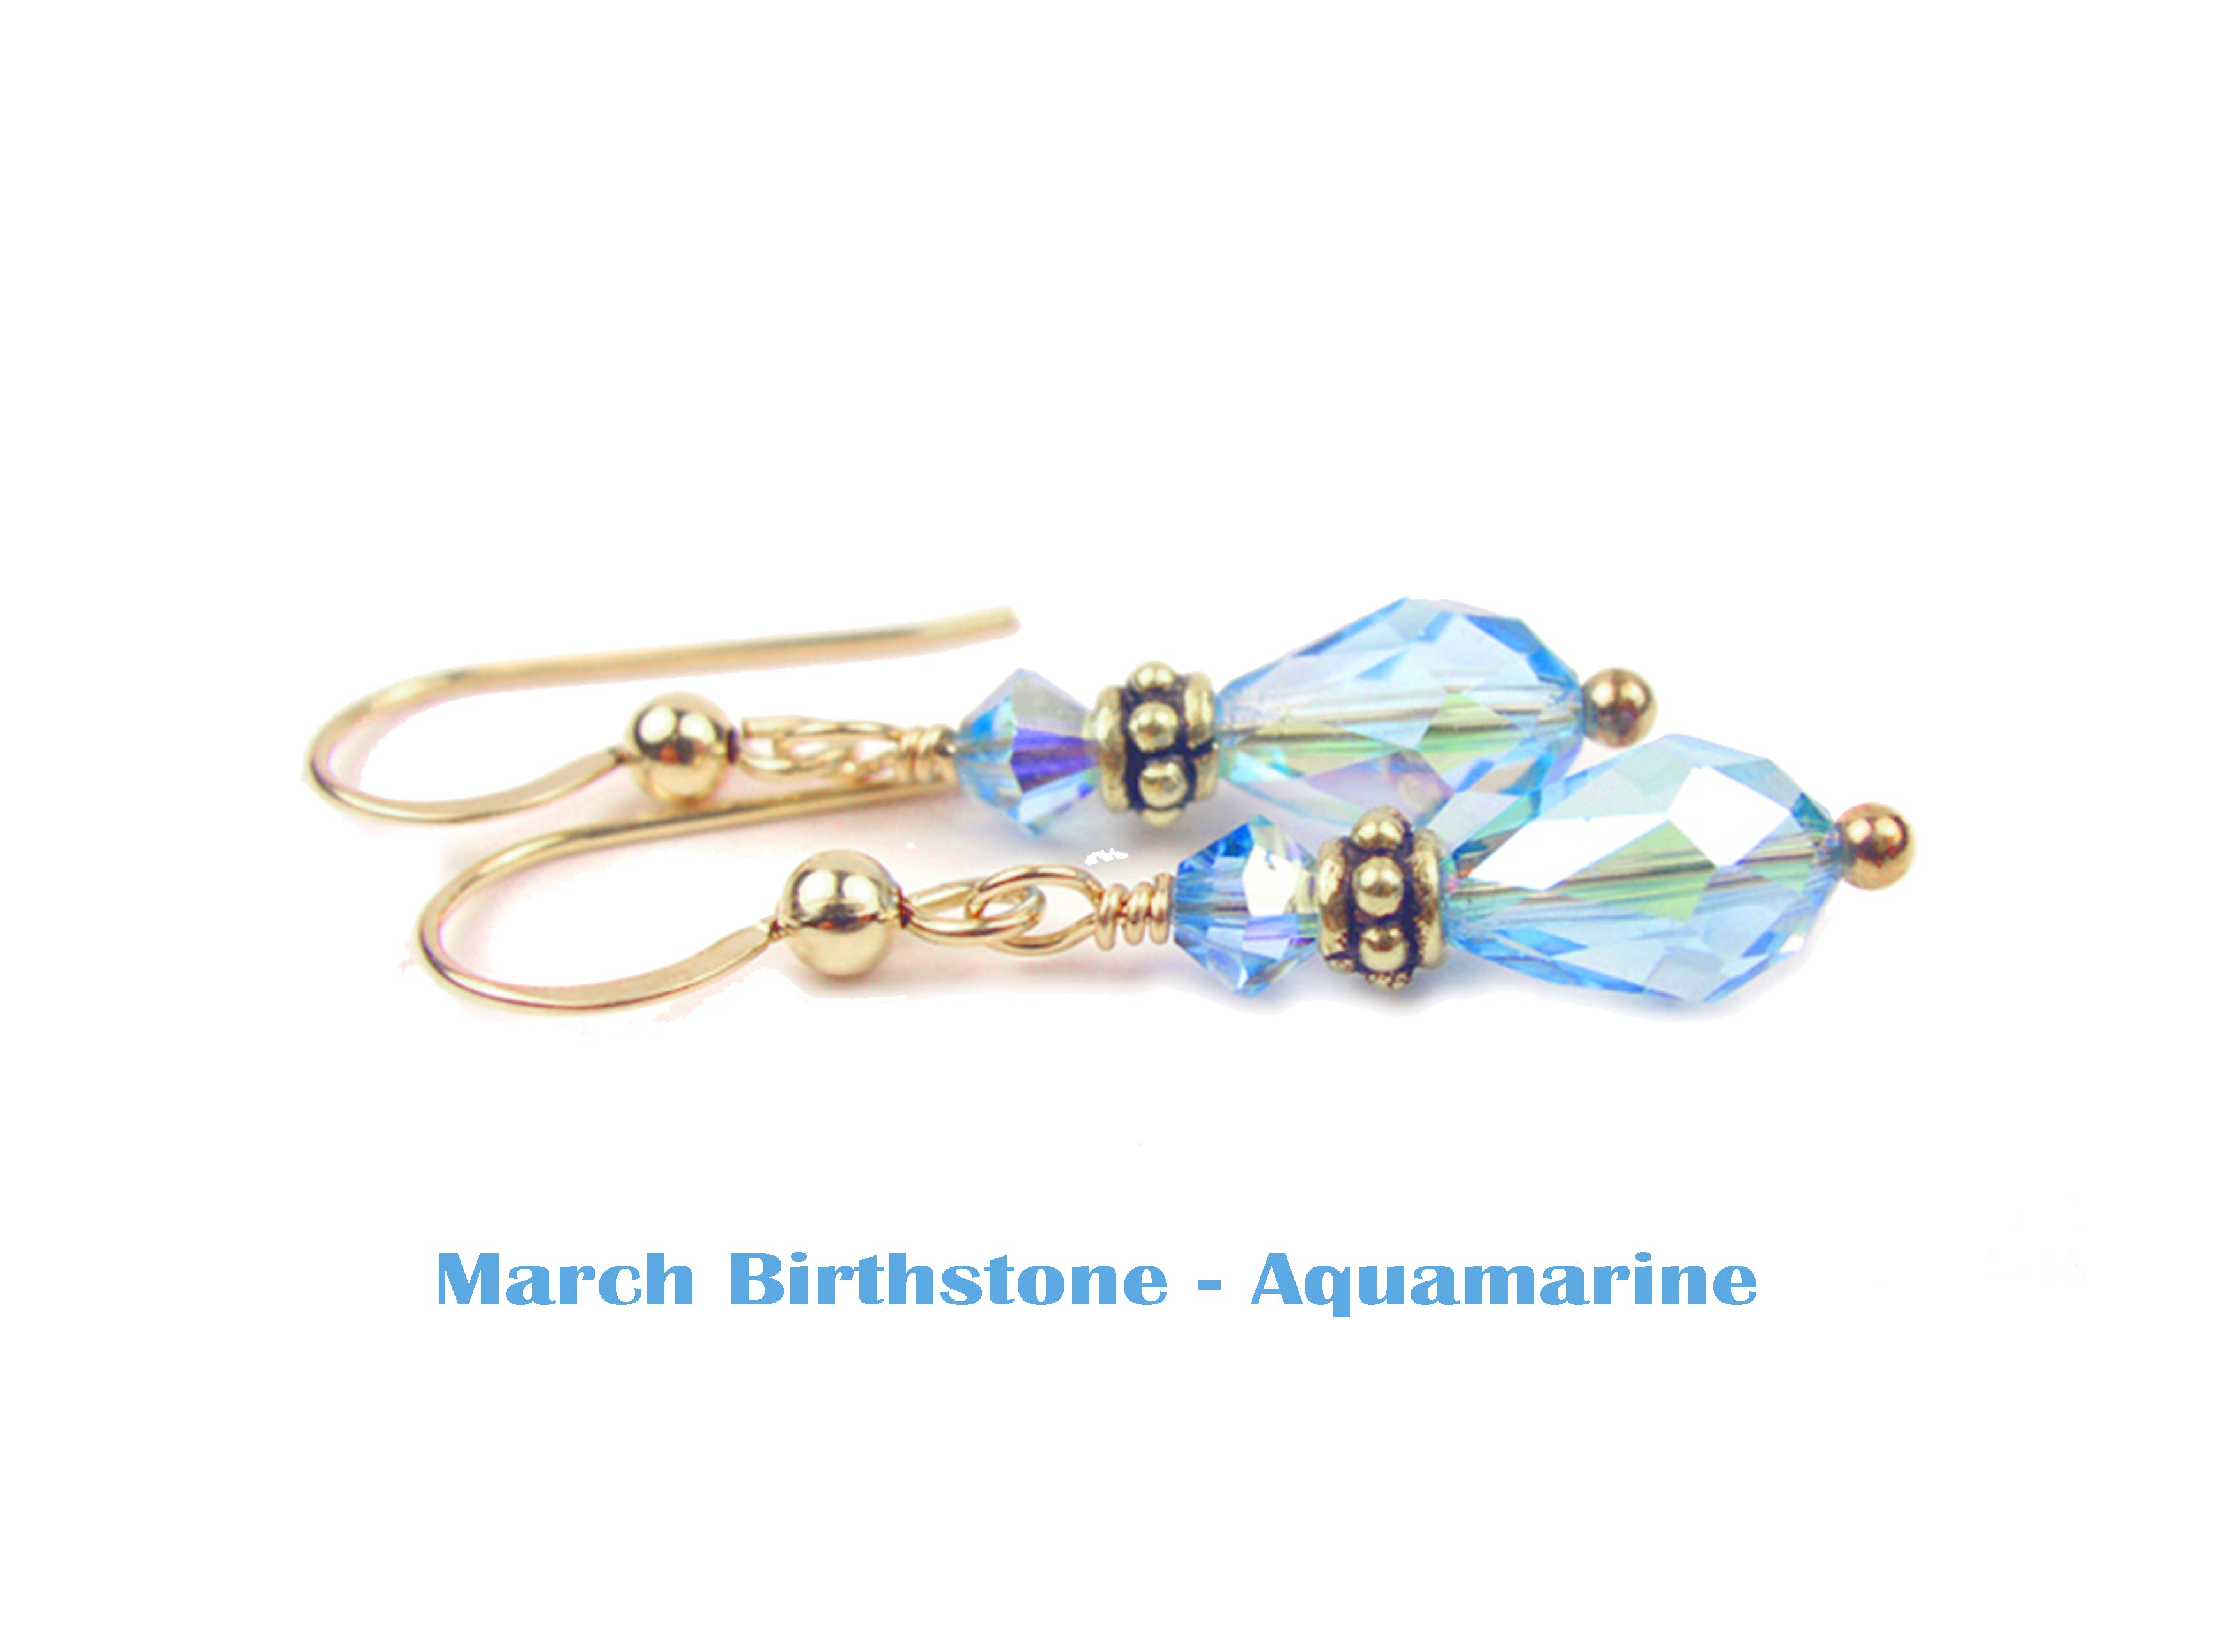 Aquamarine Earrings, March Birthstone Earrings, Gold Teardrop Earrings, Crystal Jewelry